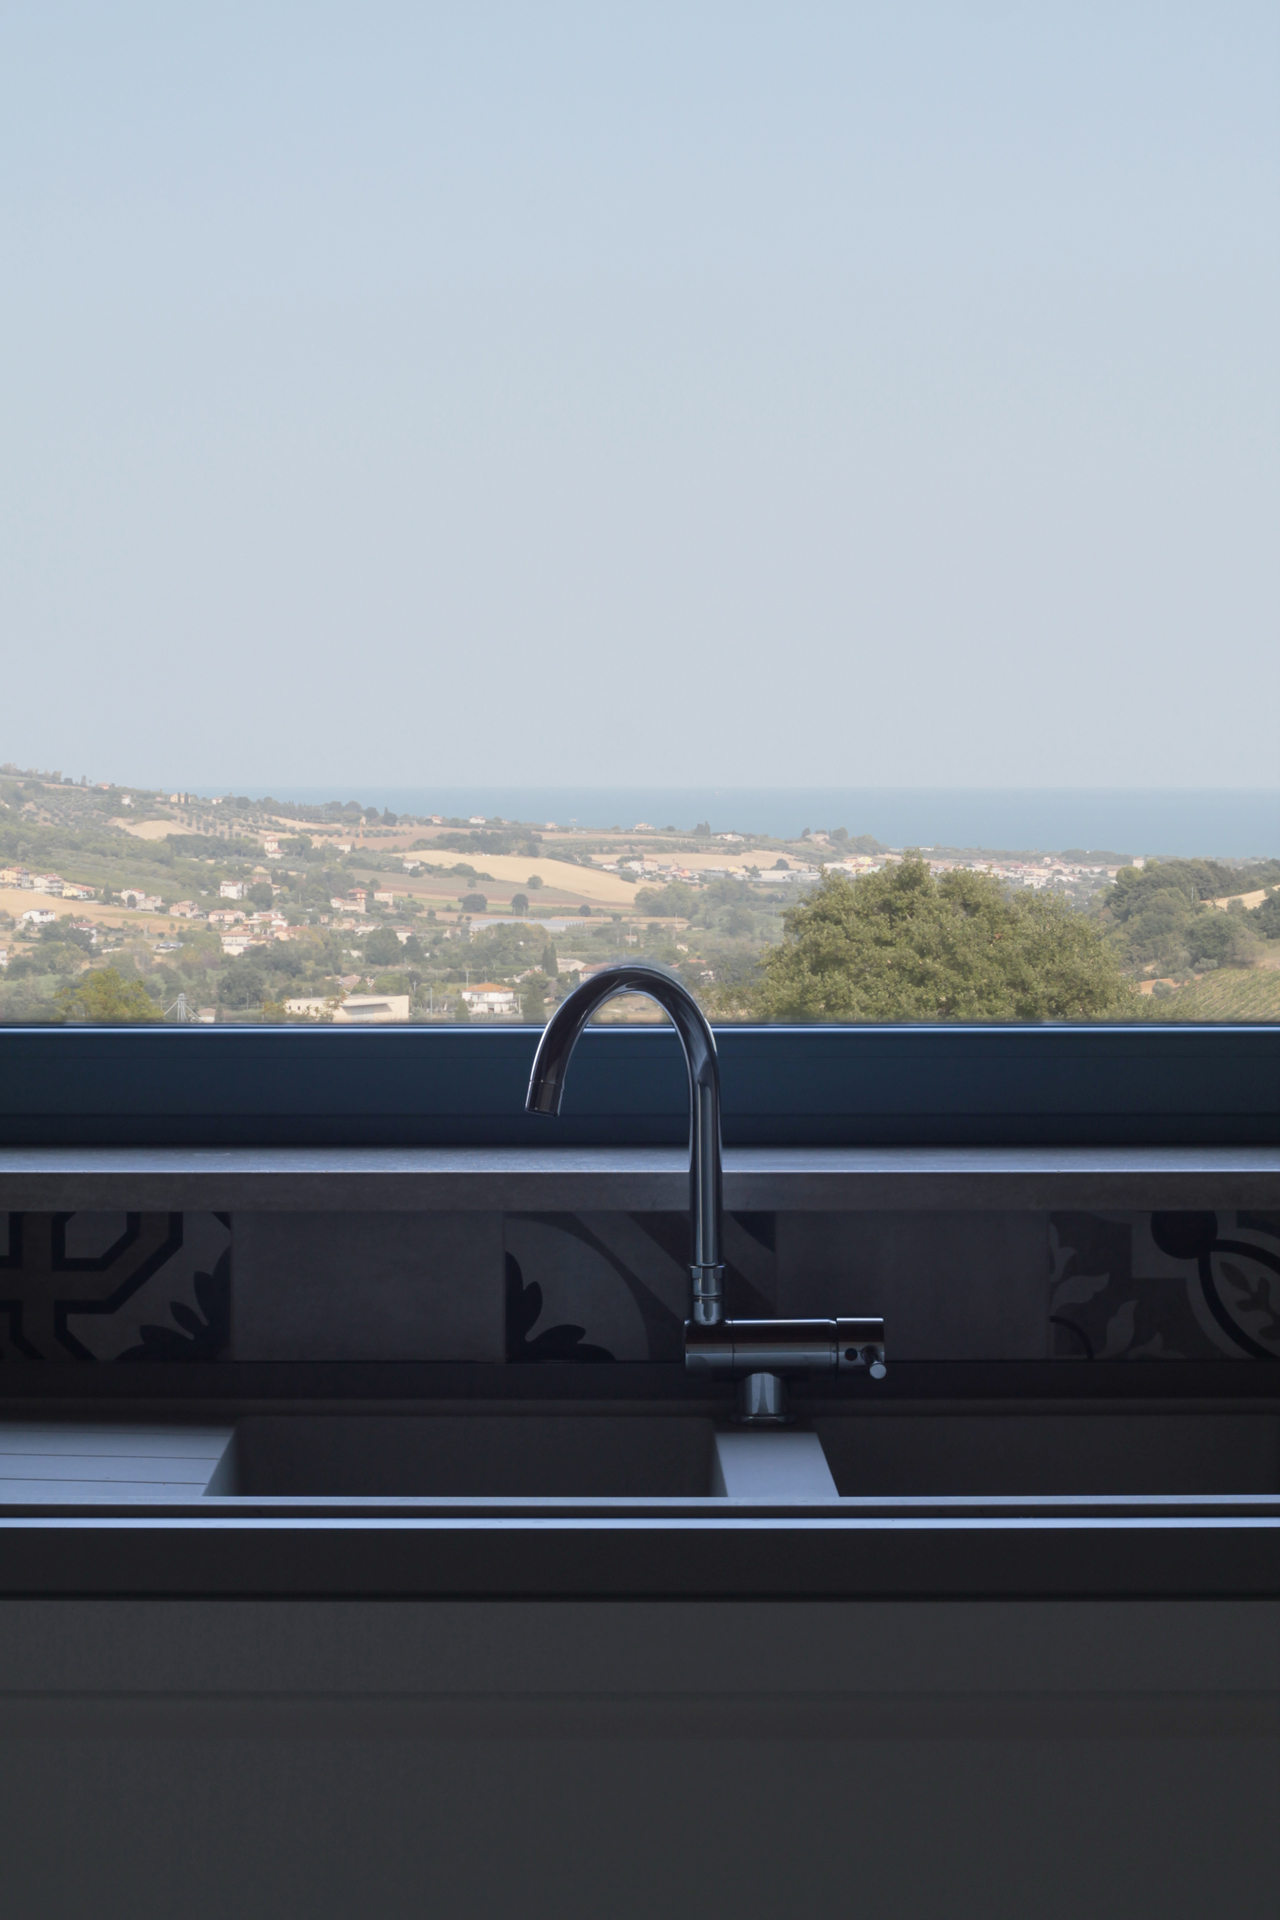 Casa di campagna - interno - dettaglio della finestra posta sopra il piano di lavoro della cucina fuori dalla quale si osserva il paesaggio che degrada verso il mare adriatico ben visibile sullo sfondo